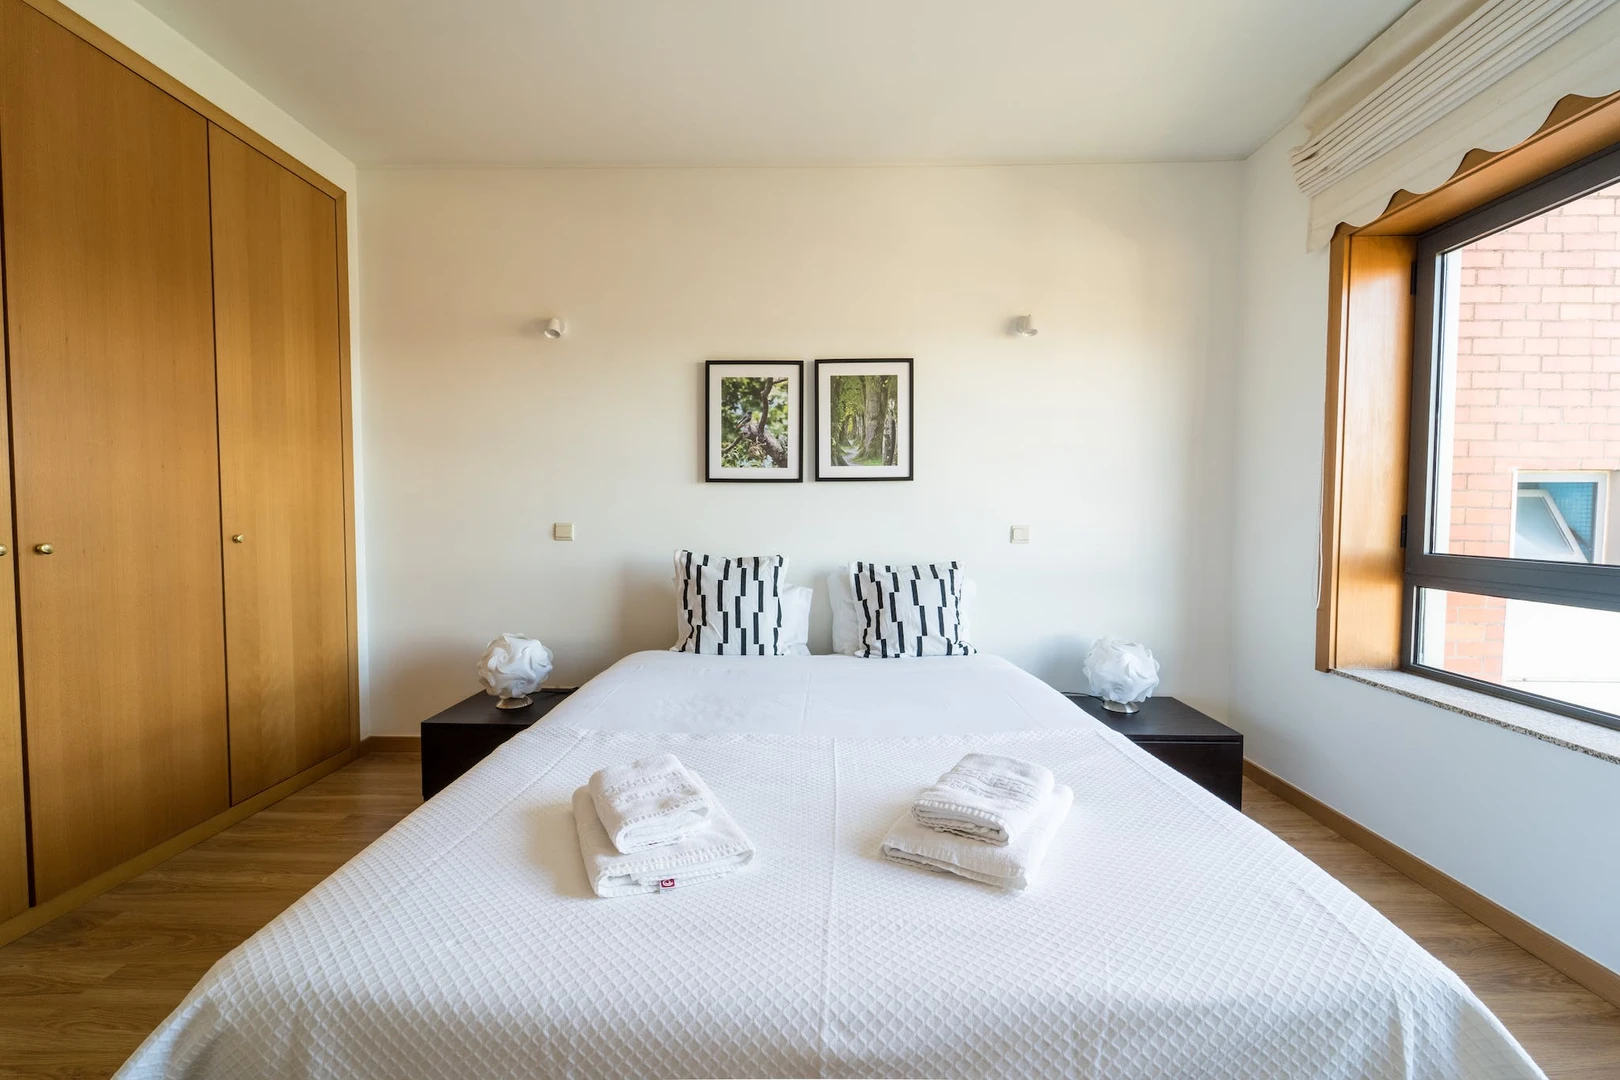 Braga de çift kişilik yataklı kiralık oda